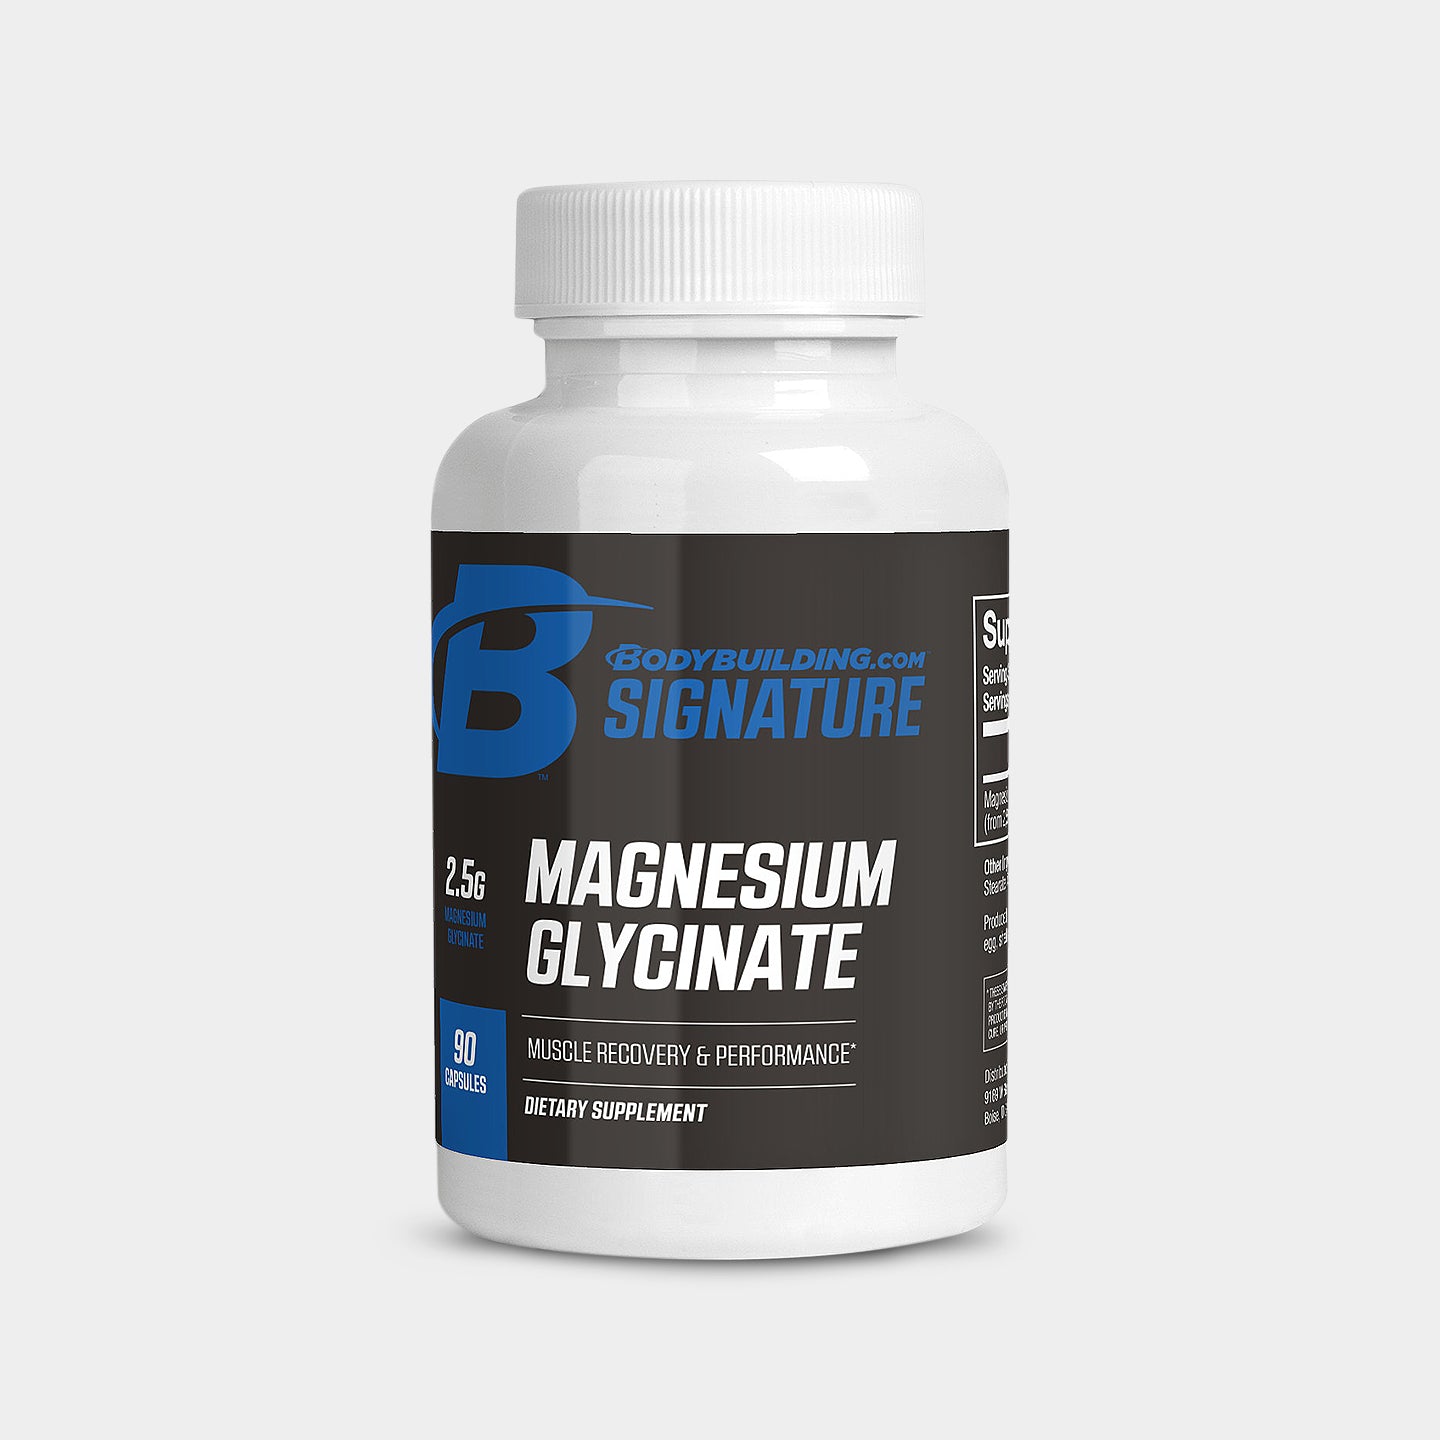 Bodybuilding.com Signature Magnesium Glycinate A1